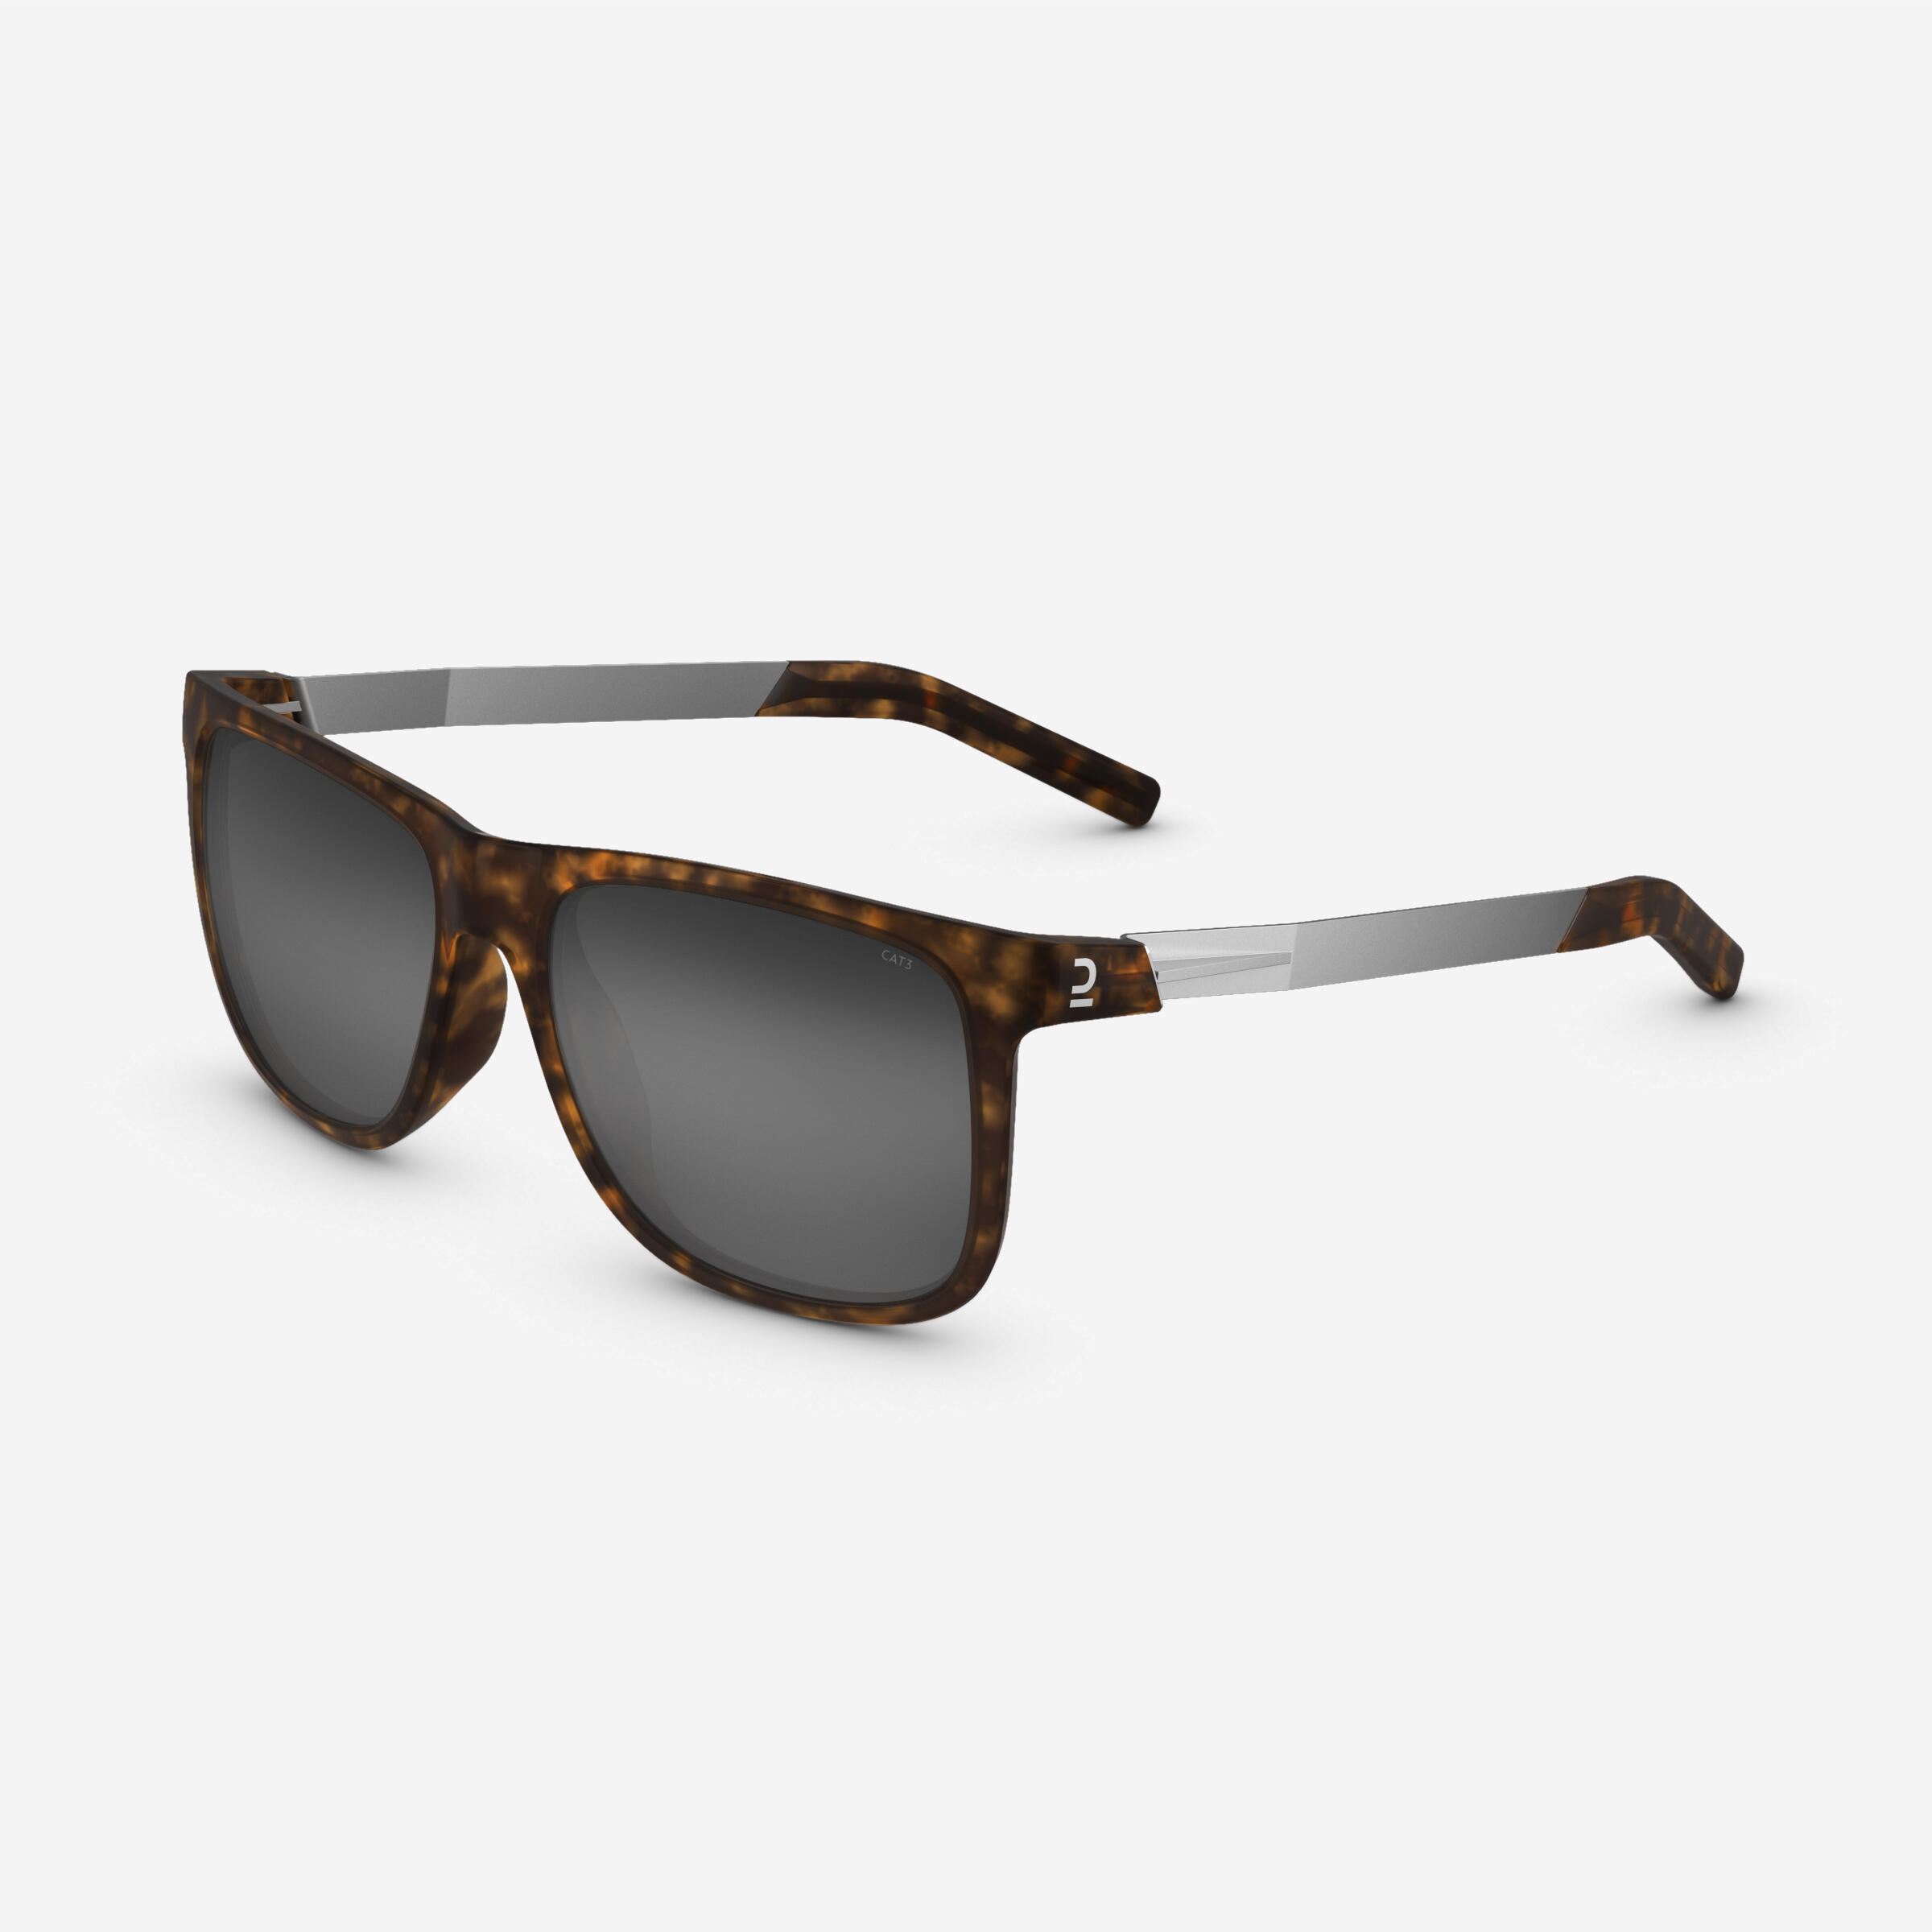 Buy Sunglasses-3 Online - Lenskart IN